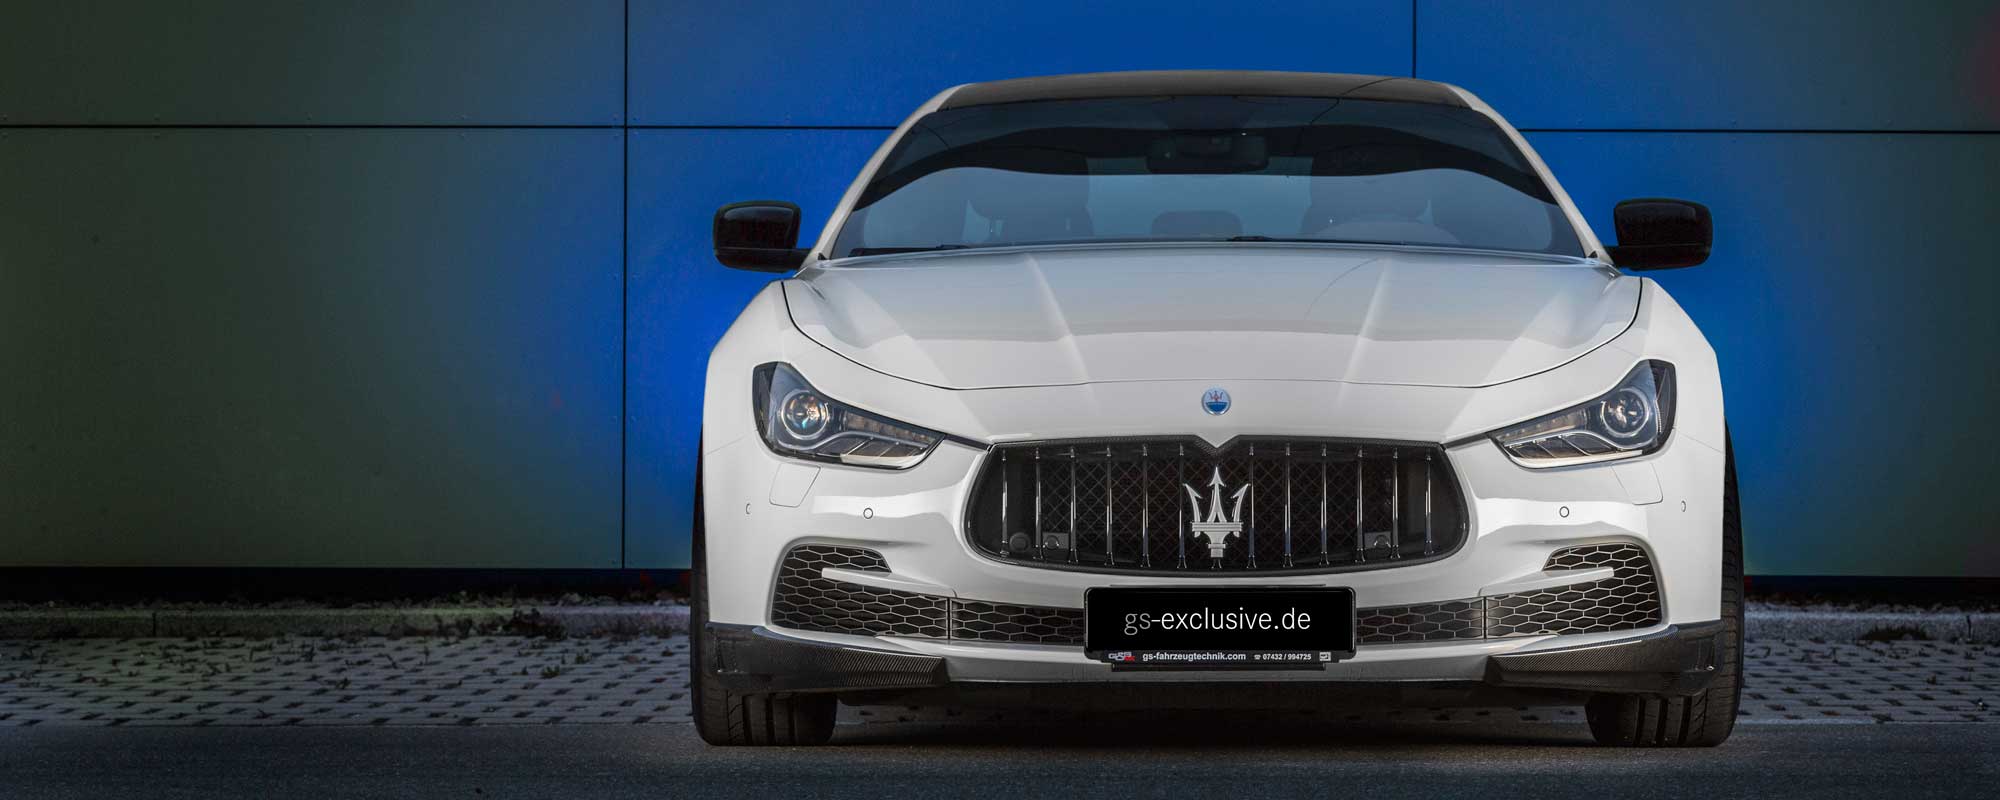 Zahlreiche Anbauteile aus Sichtcarbon werten den Maserati Ghibli zusätzlich auf